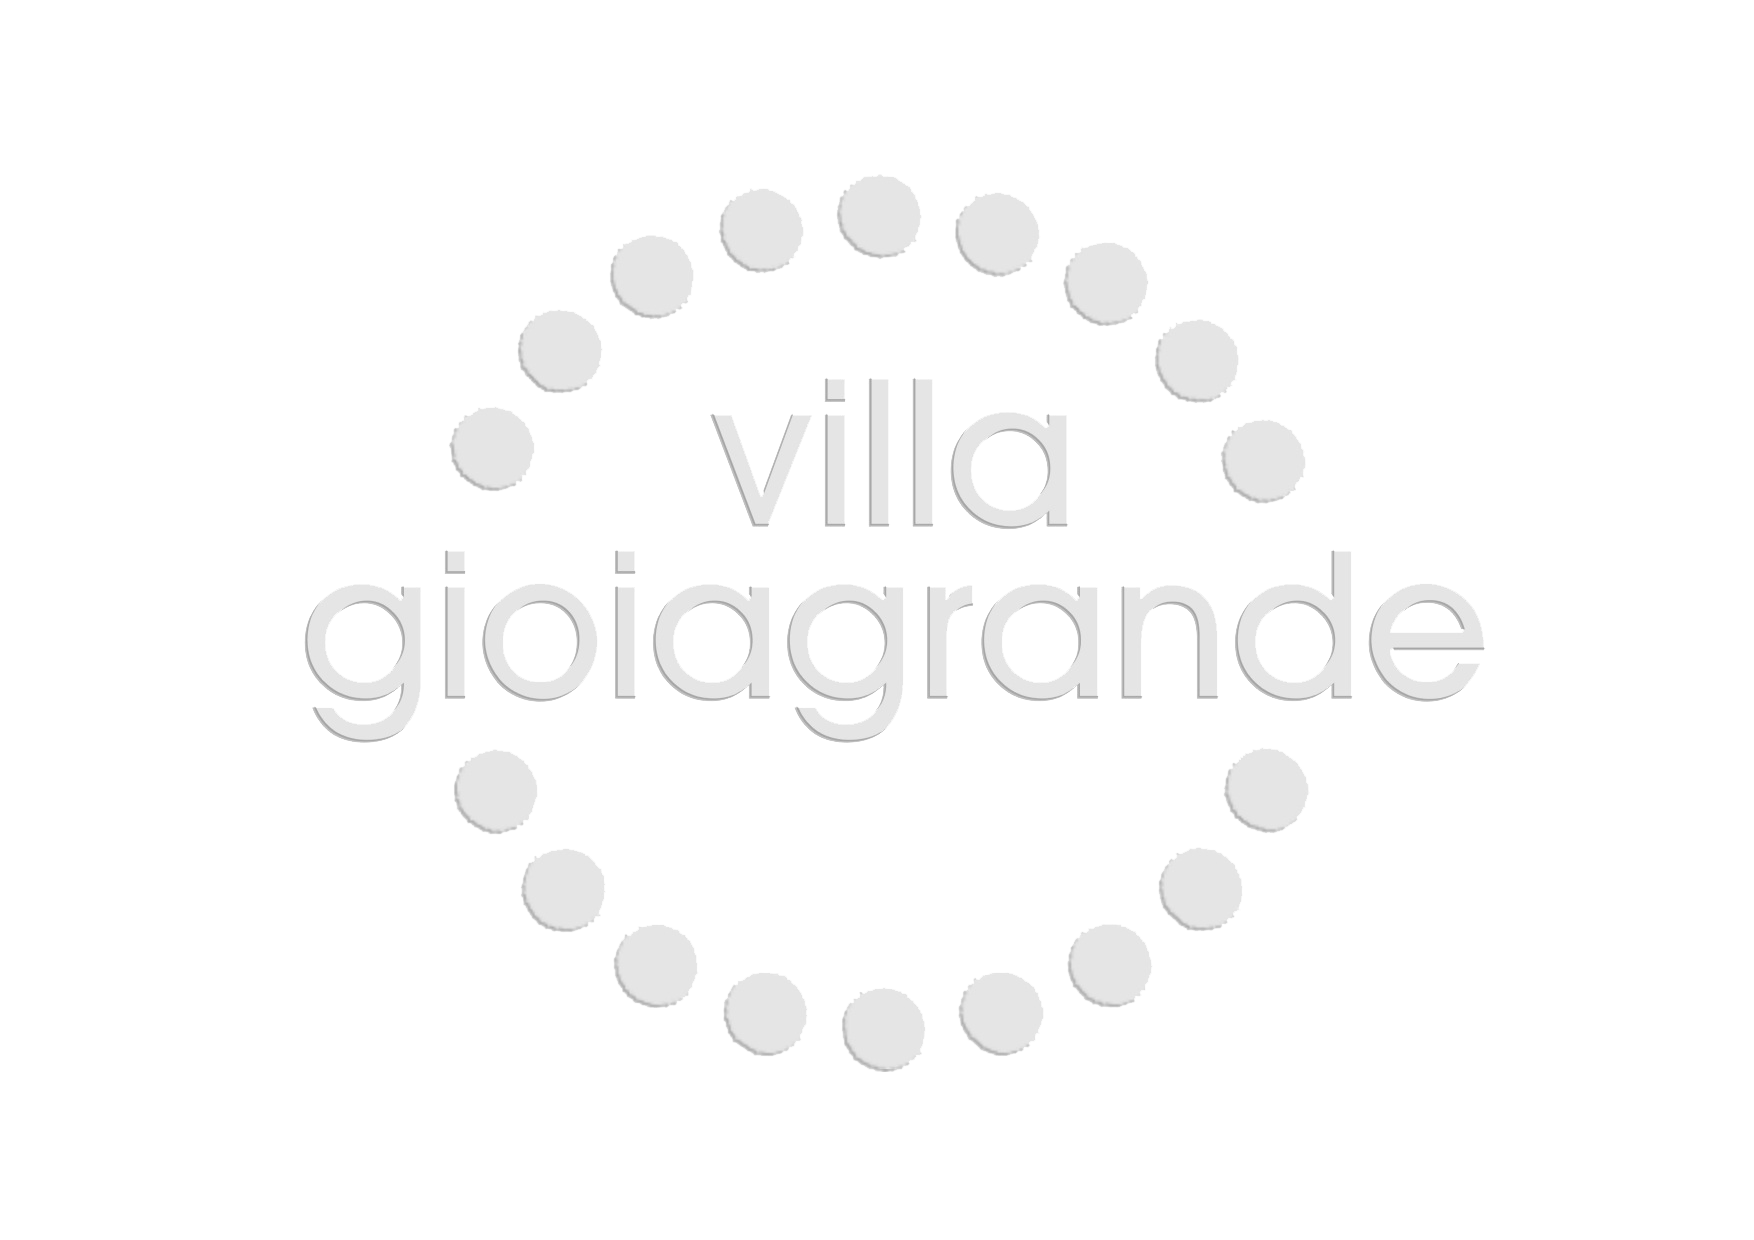 (c) Villagioiagrande.it